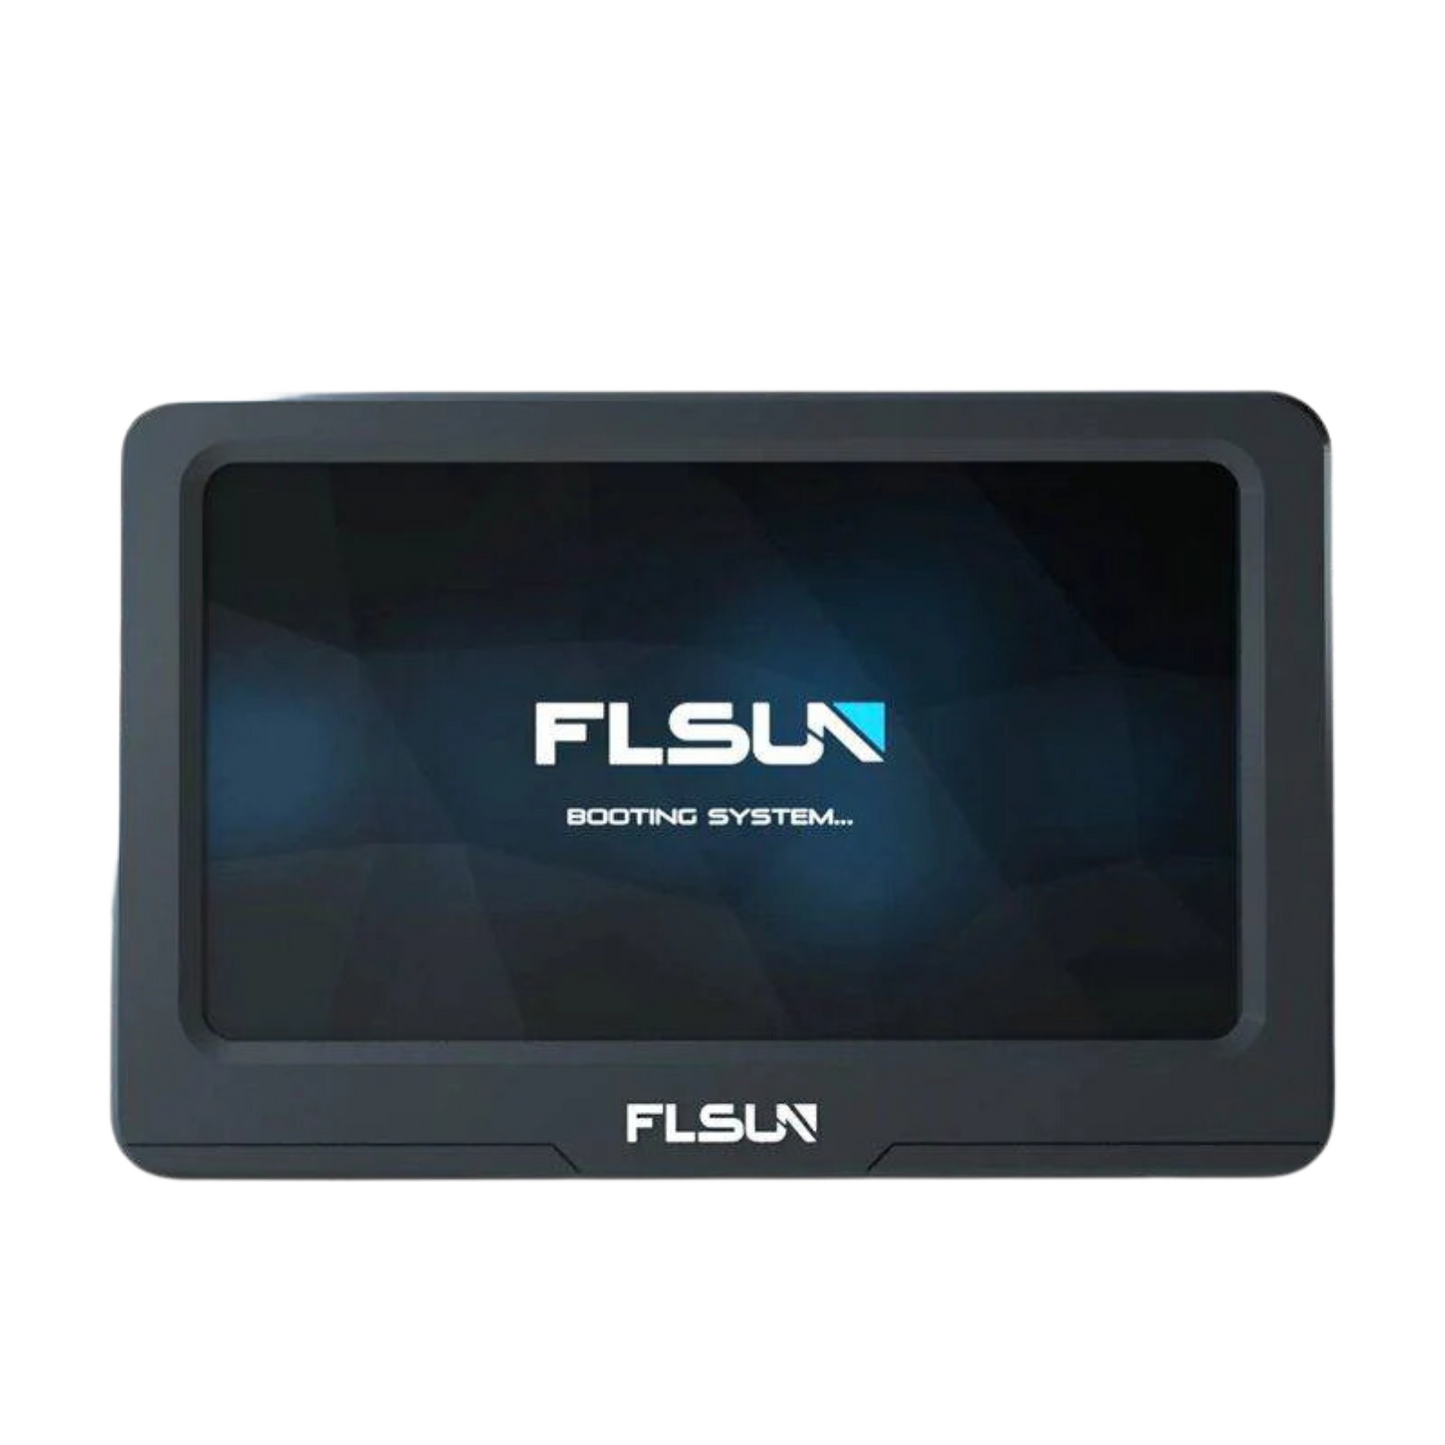 FLSUN Speeder Pad Ultra-fast touchscreen for FDM printers